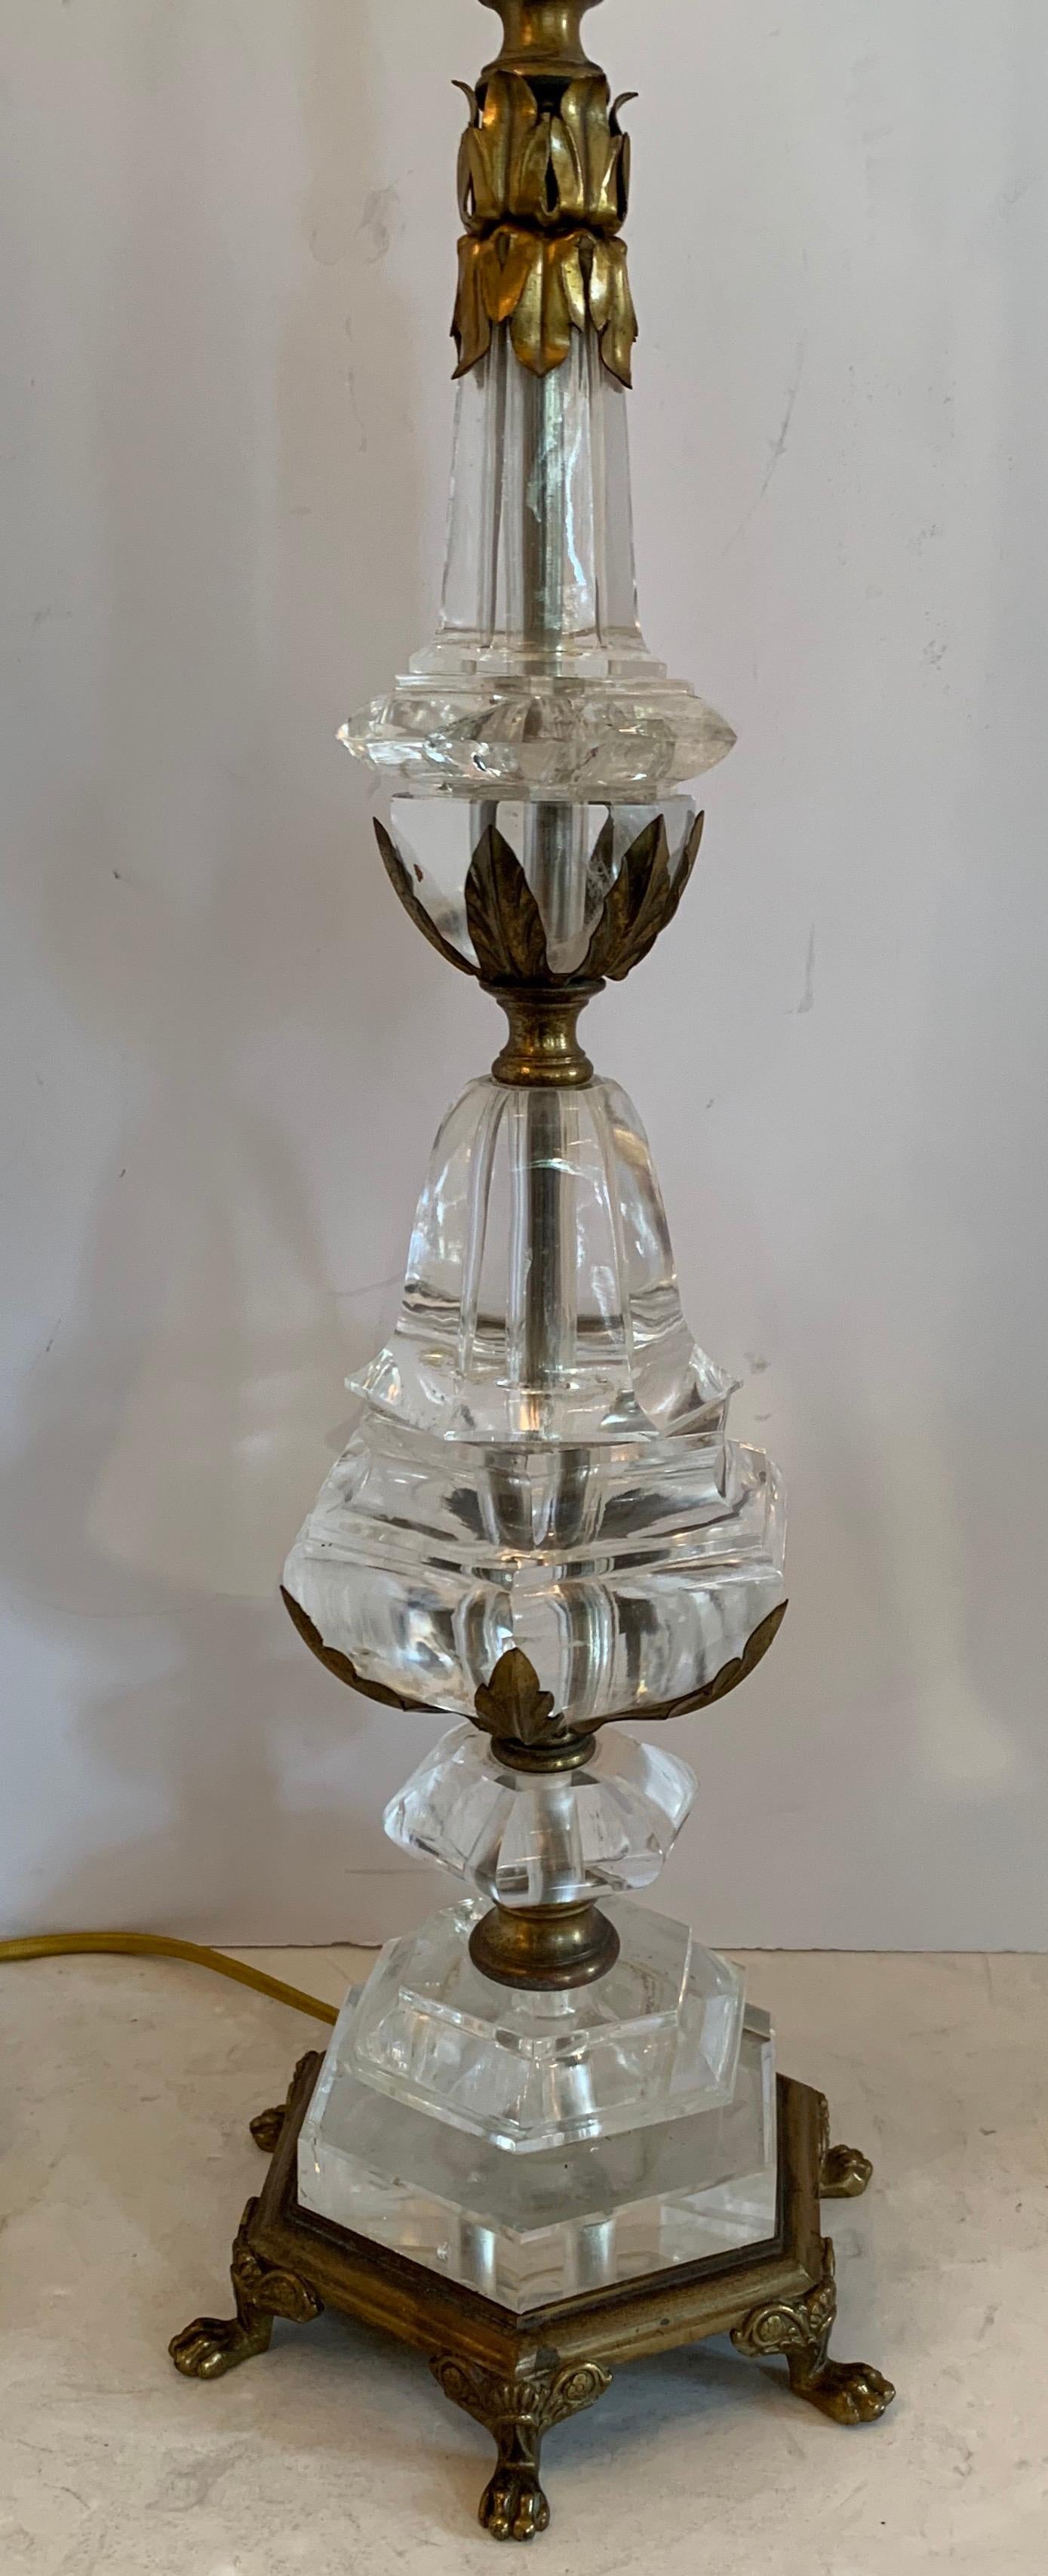 Une merveilleuse lampe de style Empire Régence en cristal de roche et bronze doré montée sur une monture en bronze doré à la manière de E.F. Caldwell.